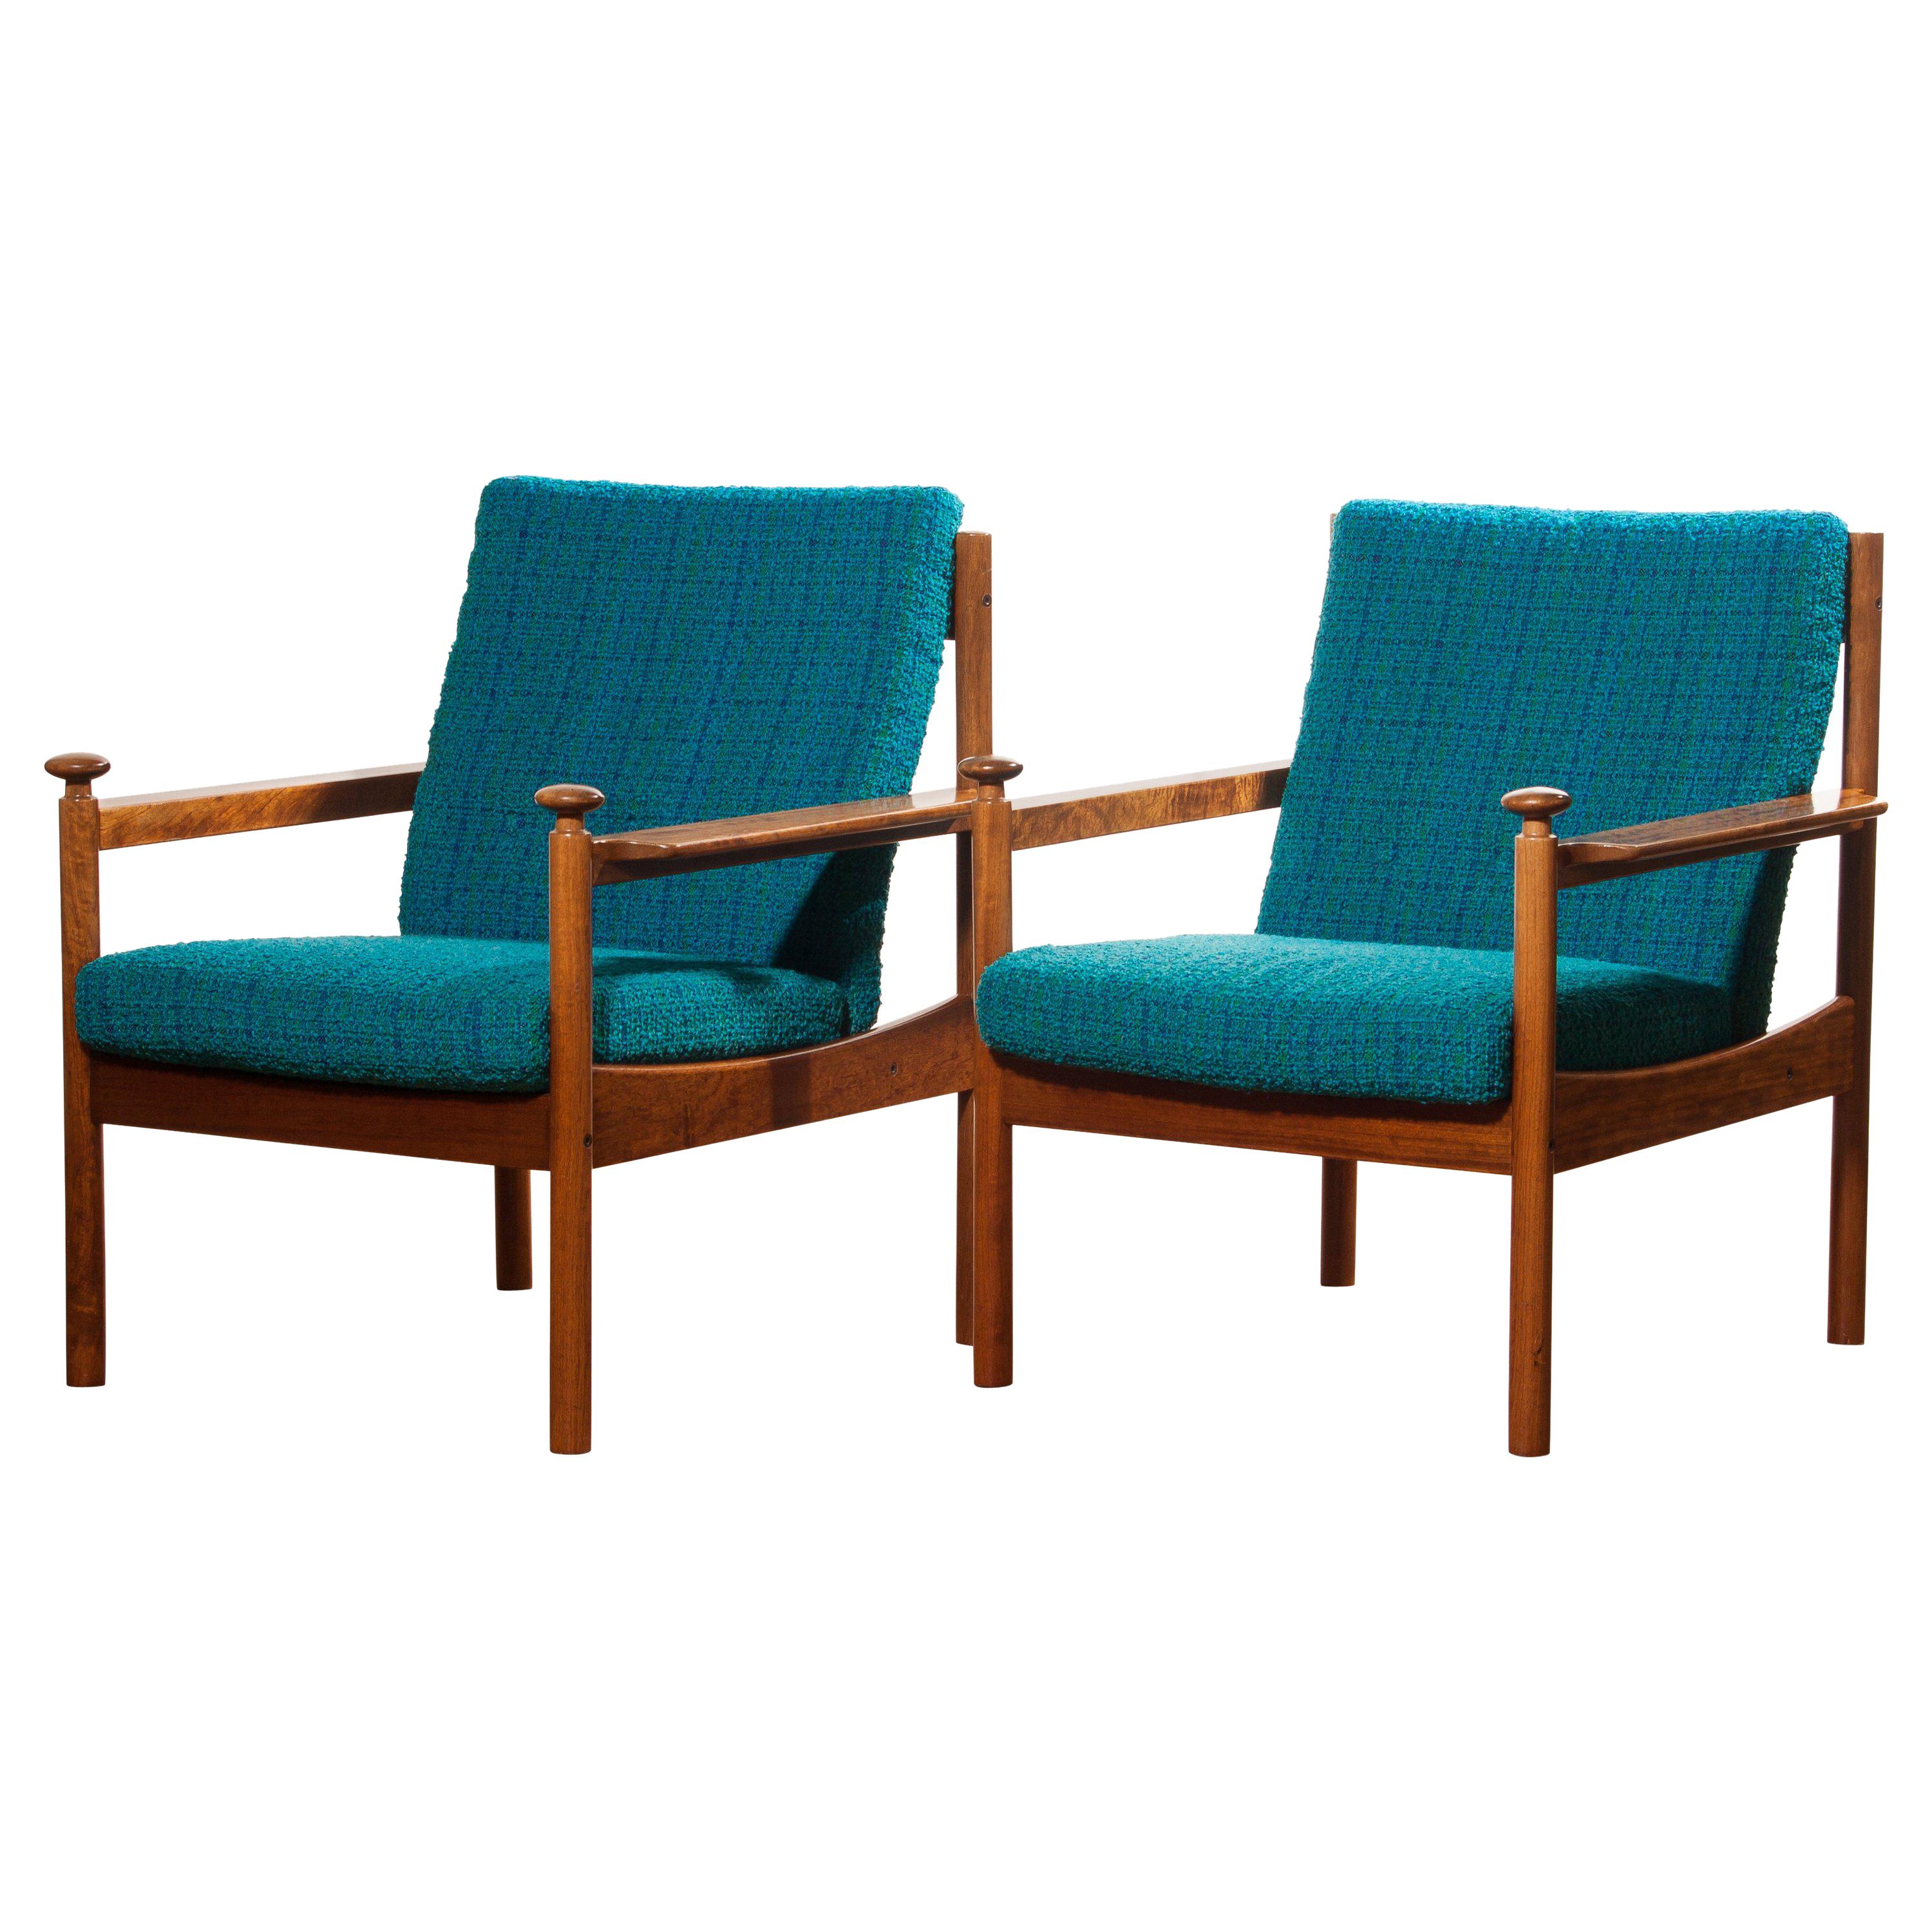 Mid-Century Modern 1950s, Pair of Blue Lounge Chairs by Torbjørn Afdal for Sandvik & Co. Mobler